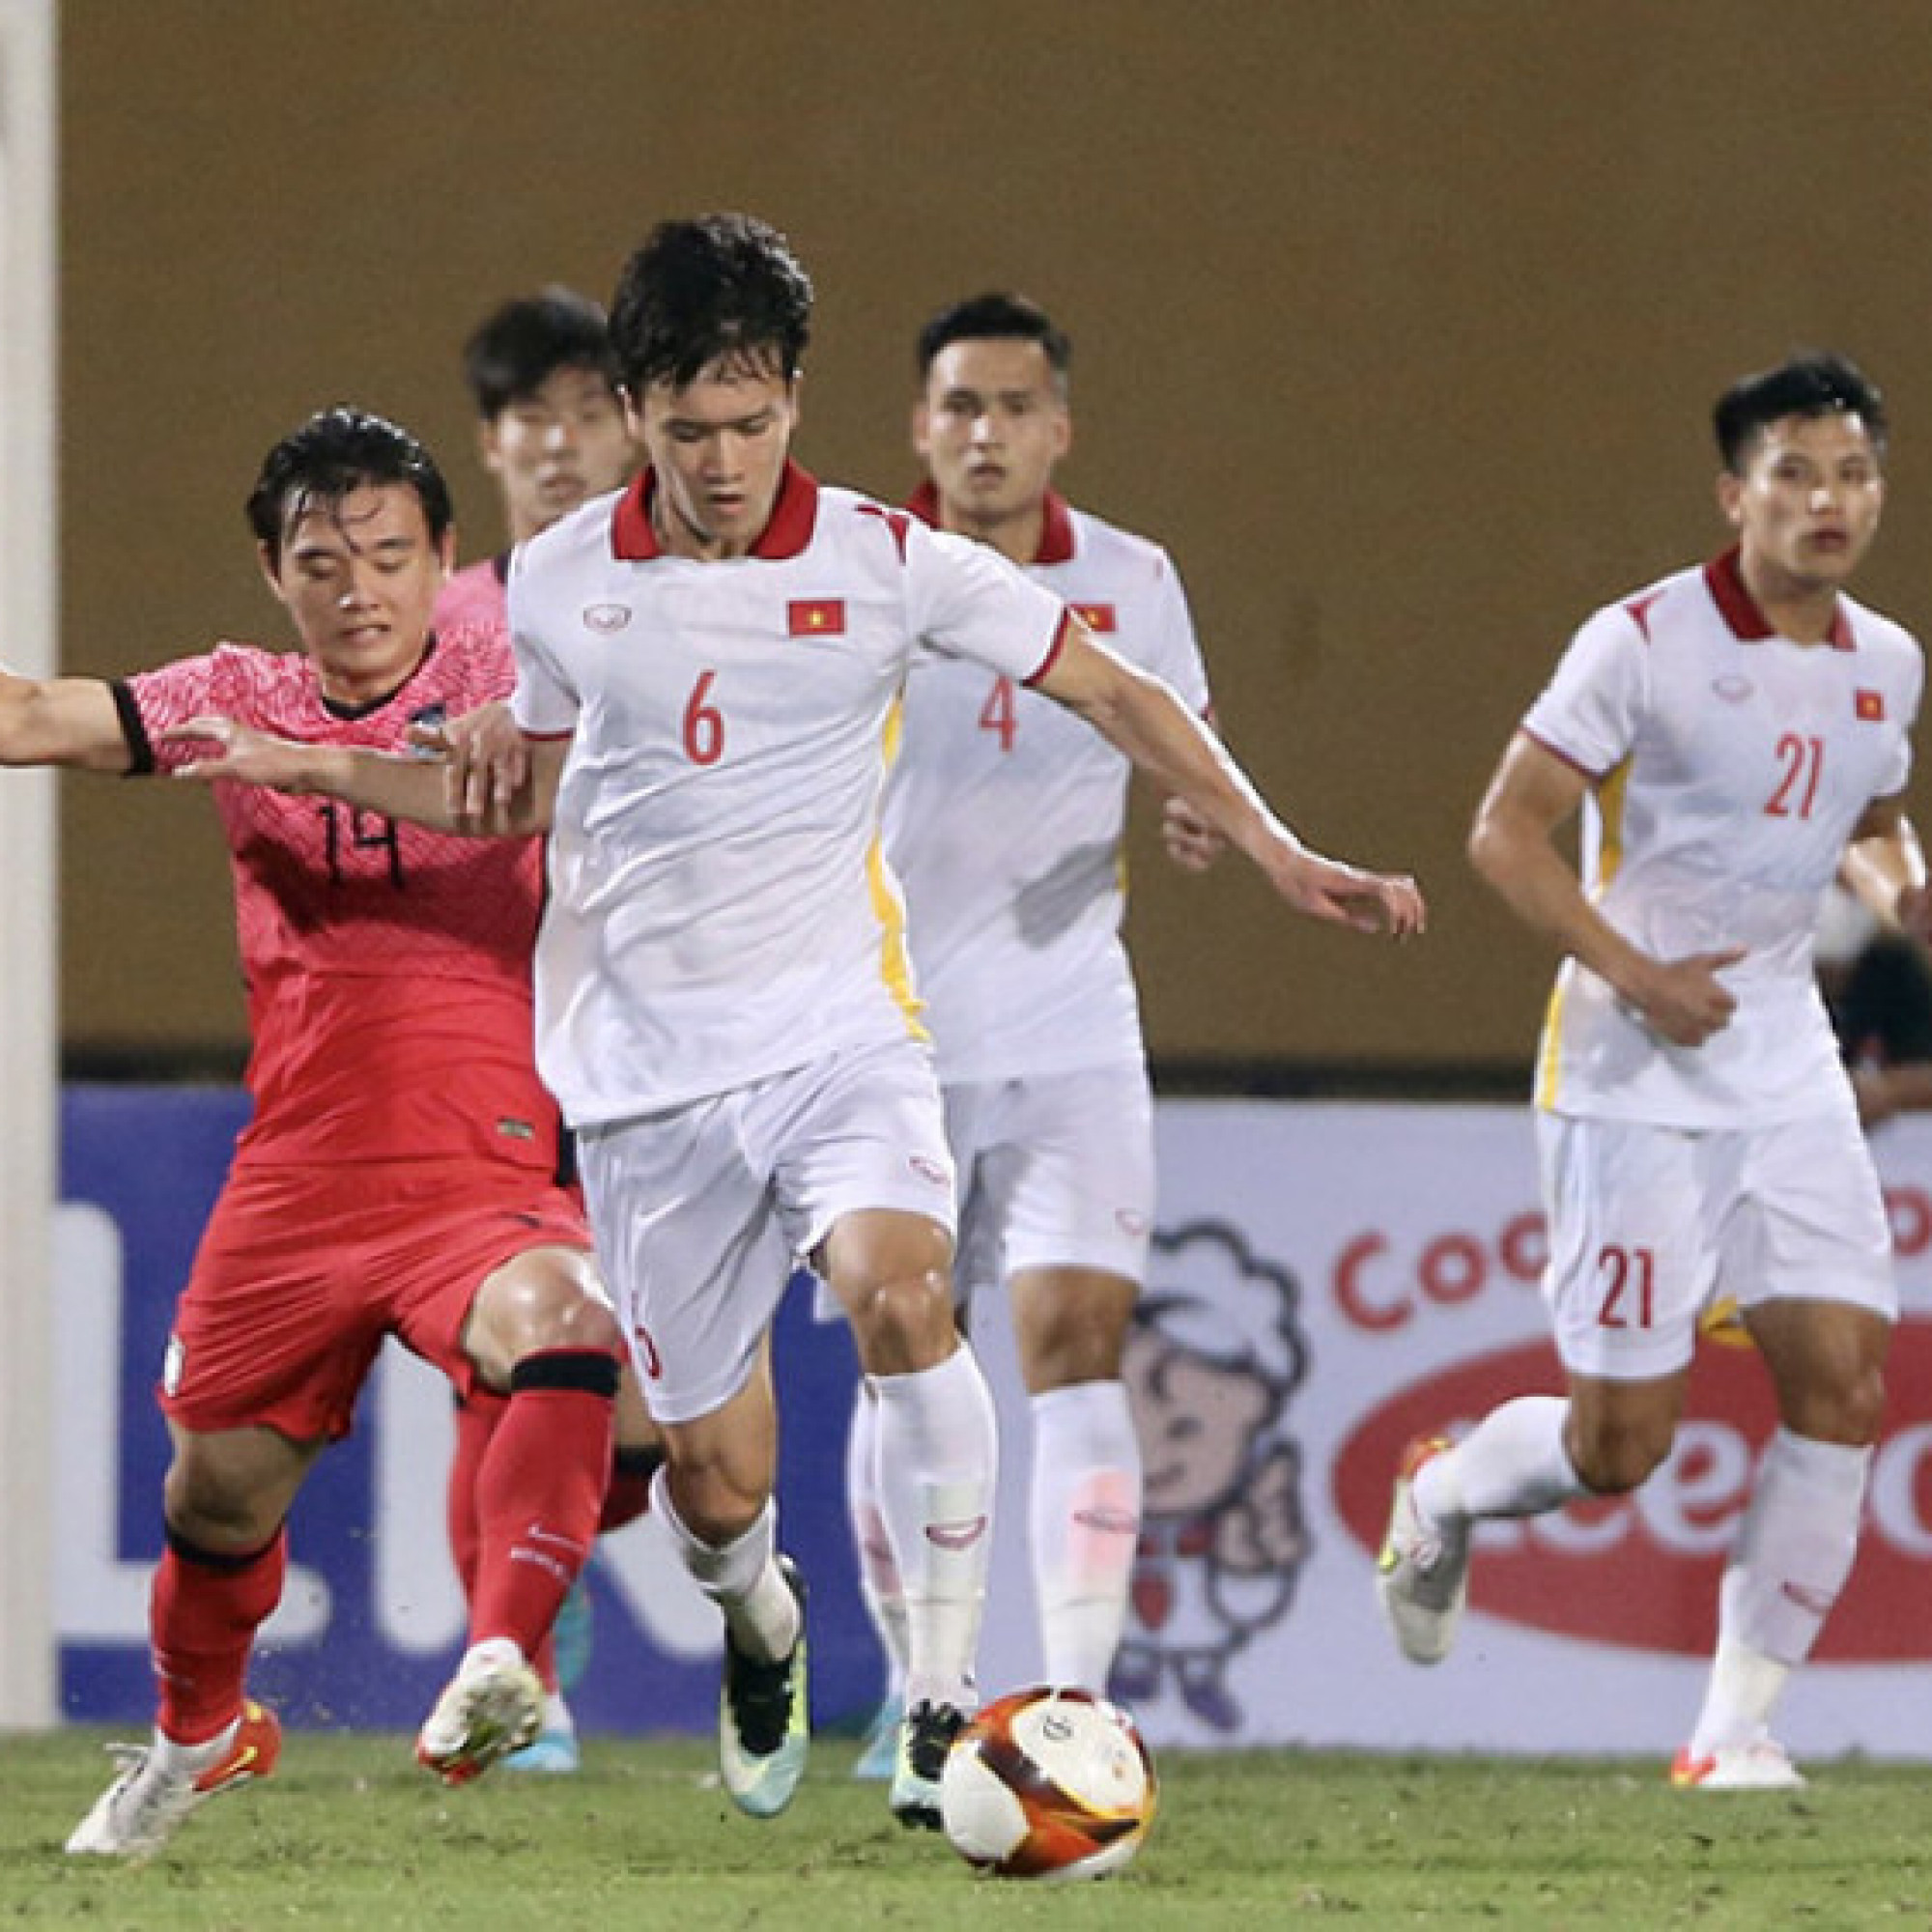 Thể thao - Video bóng đá U23 Việt Nam - U20 Hàn Quốc: Mở điểm phút 45, thoát thua nhờ cột dọc